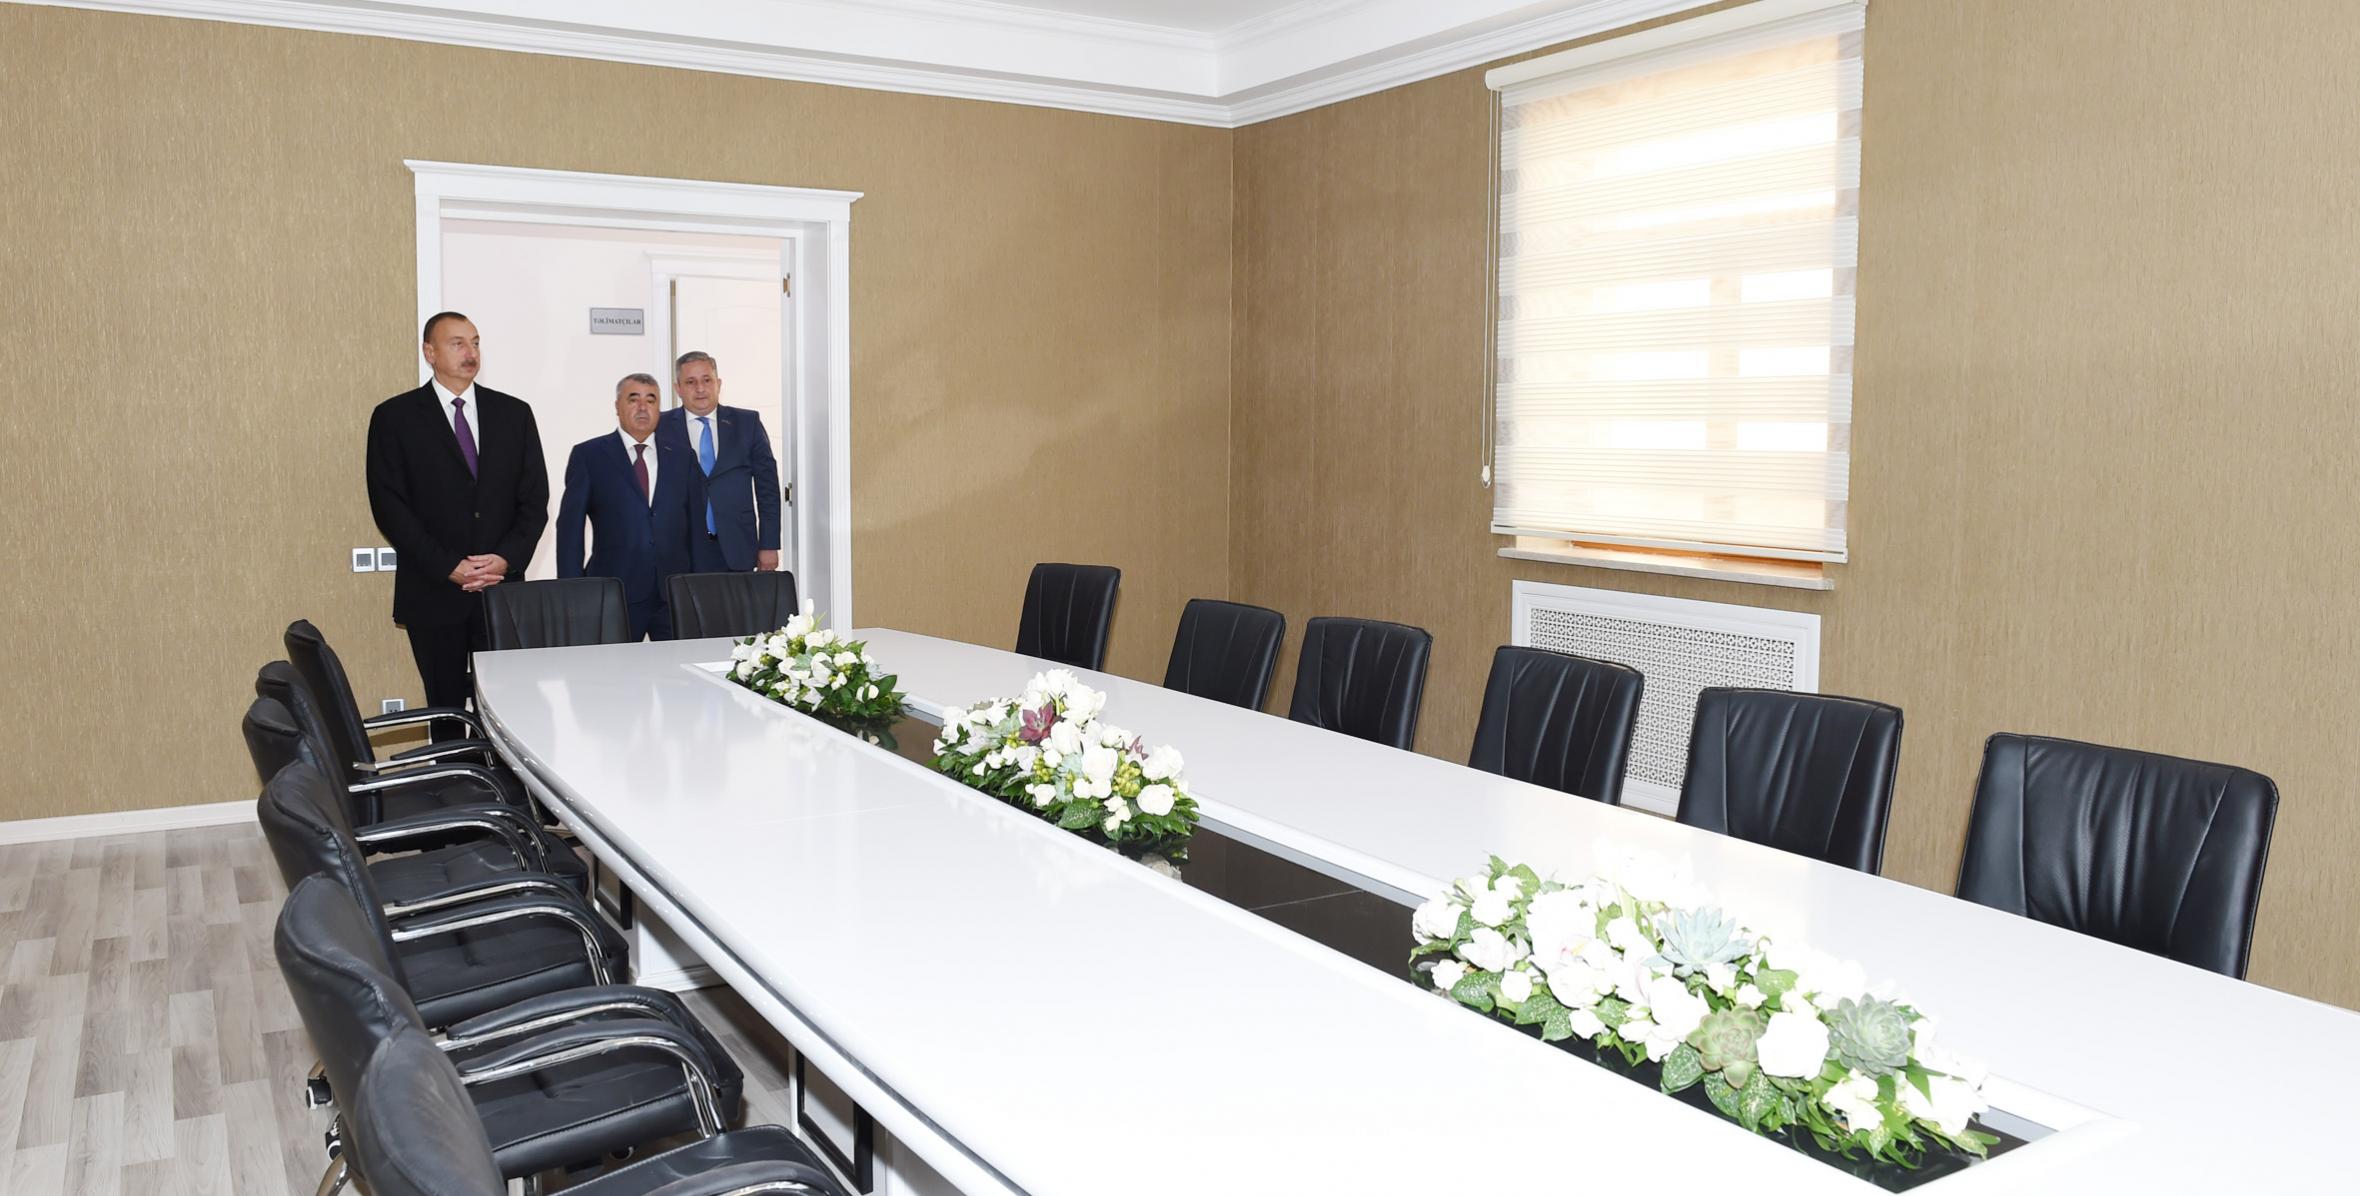 İlham Əliyev Yeni Azərbaycan Partiyası Göyçay rayon təşkilatının yeni inzibati binasının açılışında iştirak edib